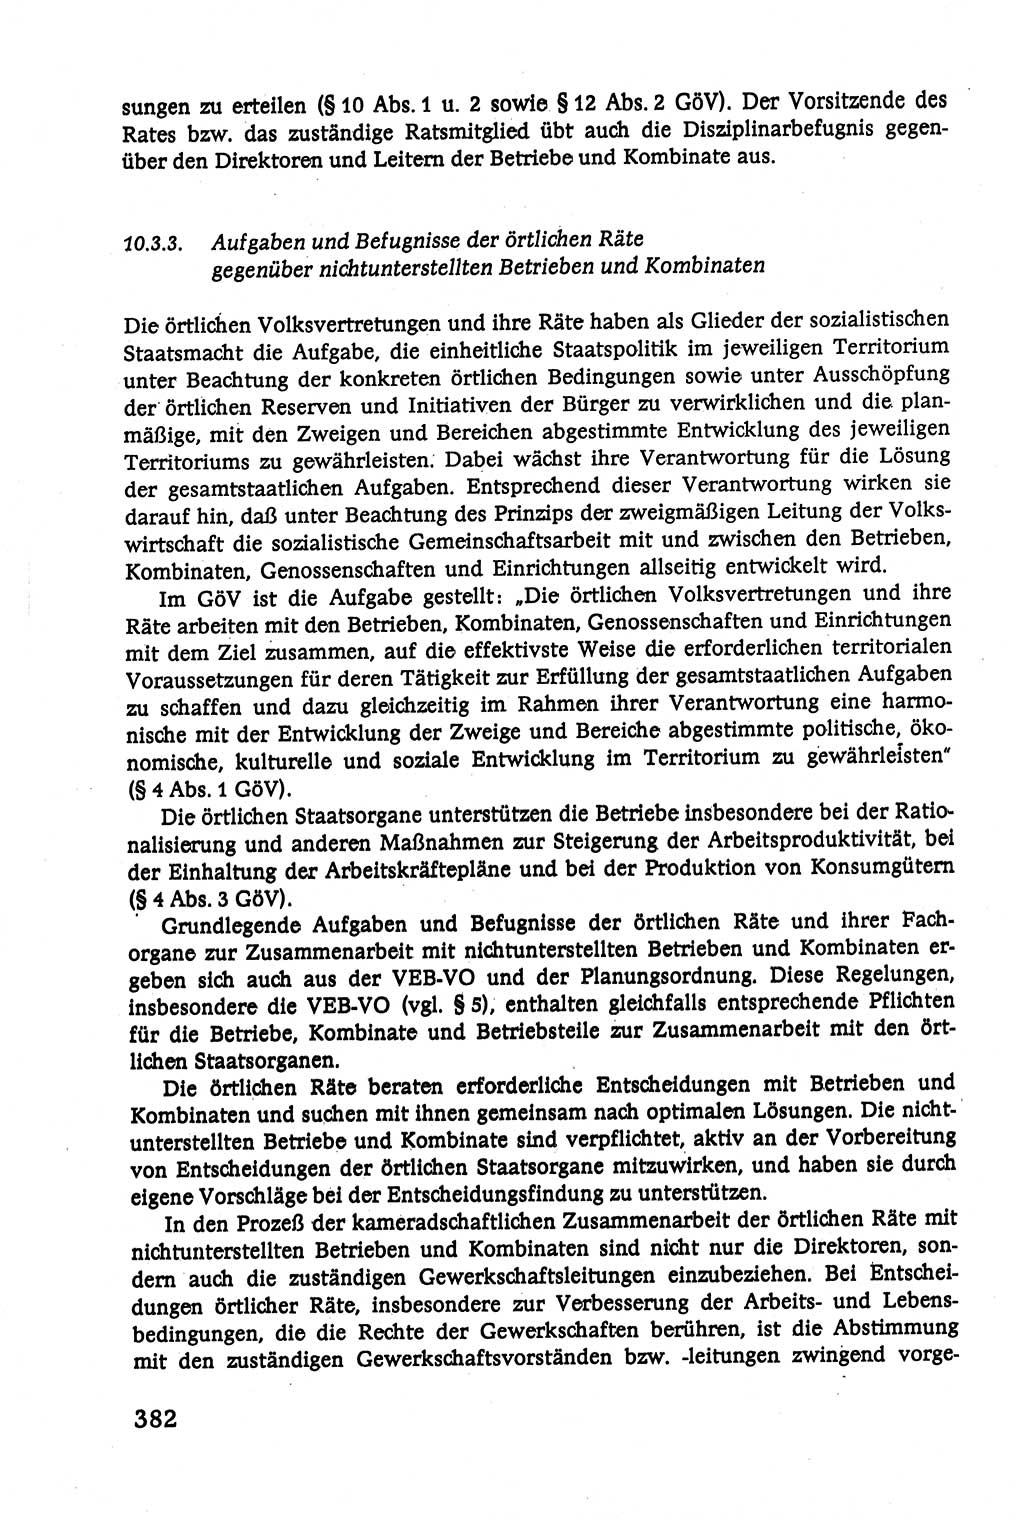 Verwaltungsrecht [Deutsche Demokratische Republik (DDR)], Lehrbuch 1979, Seite 382 (Verw.-R. DDR Lb. 1979, S. 382)